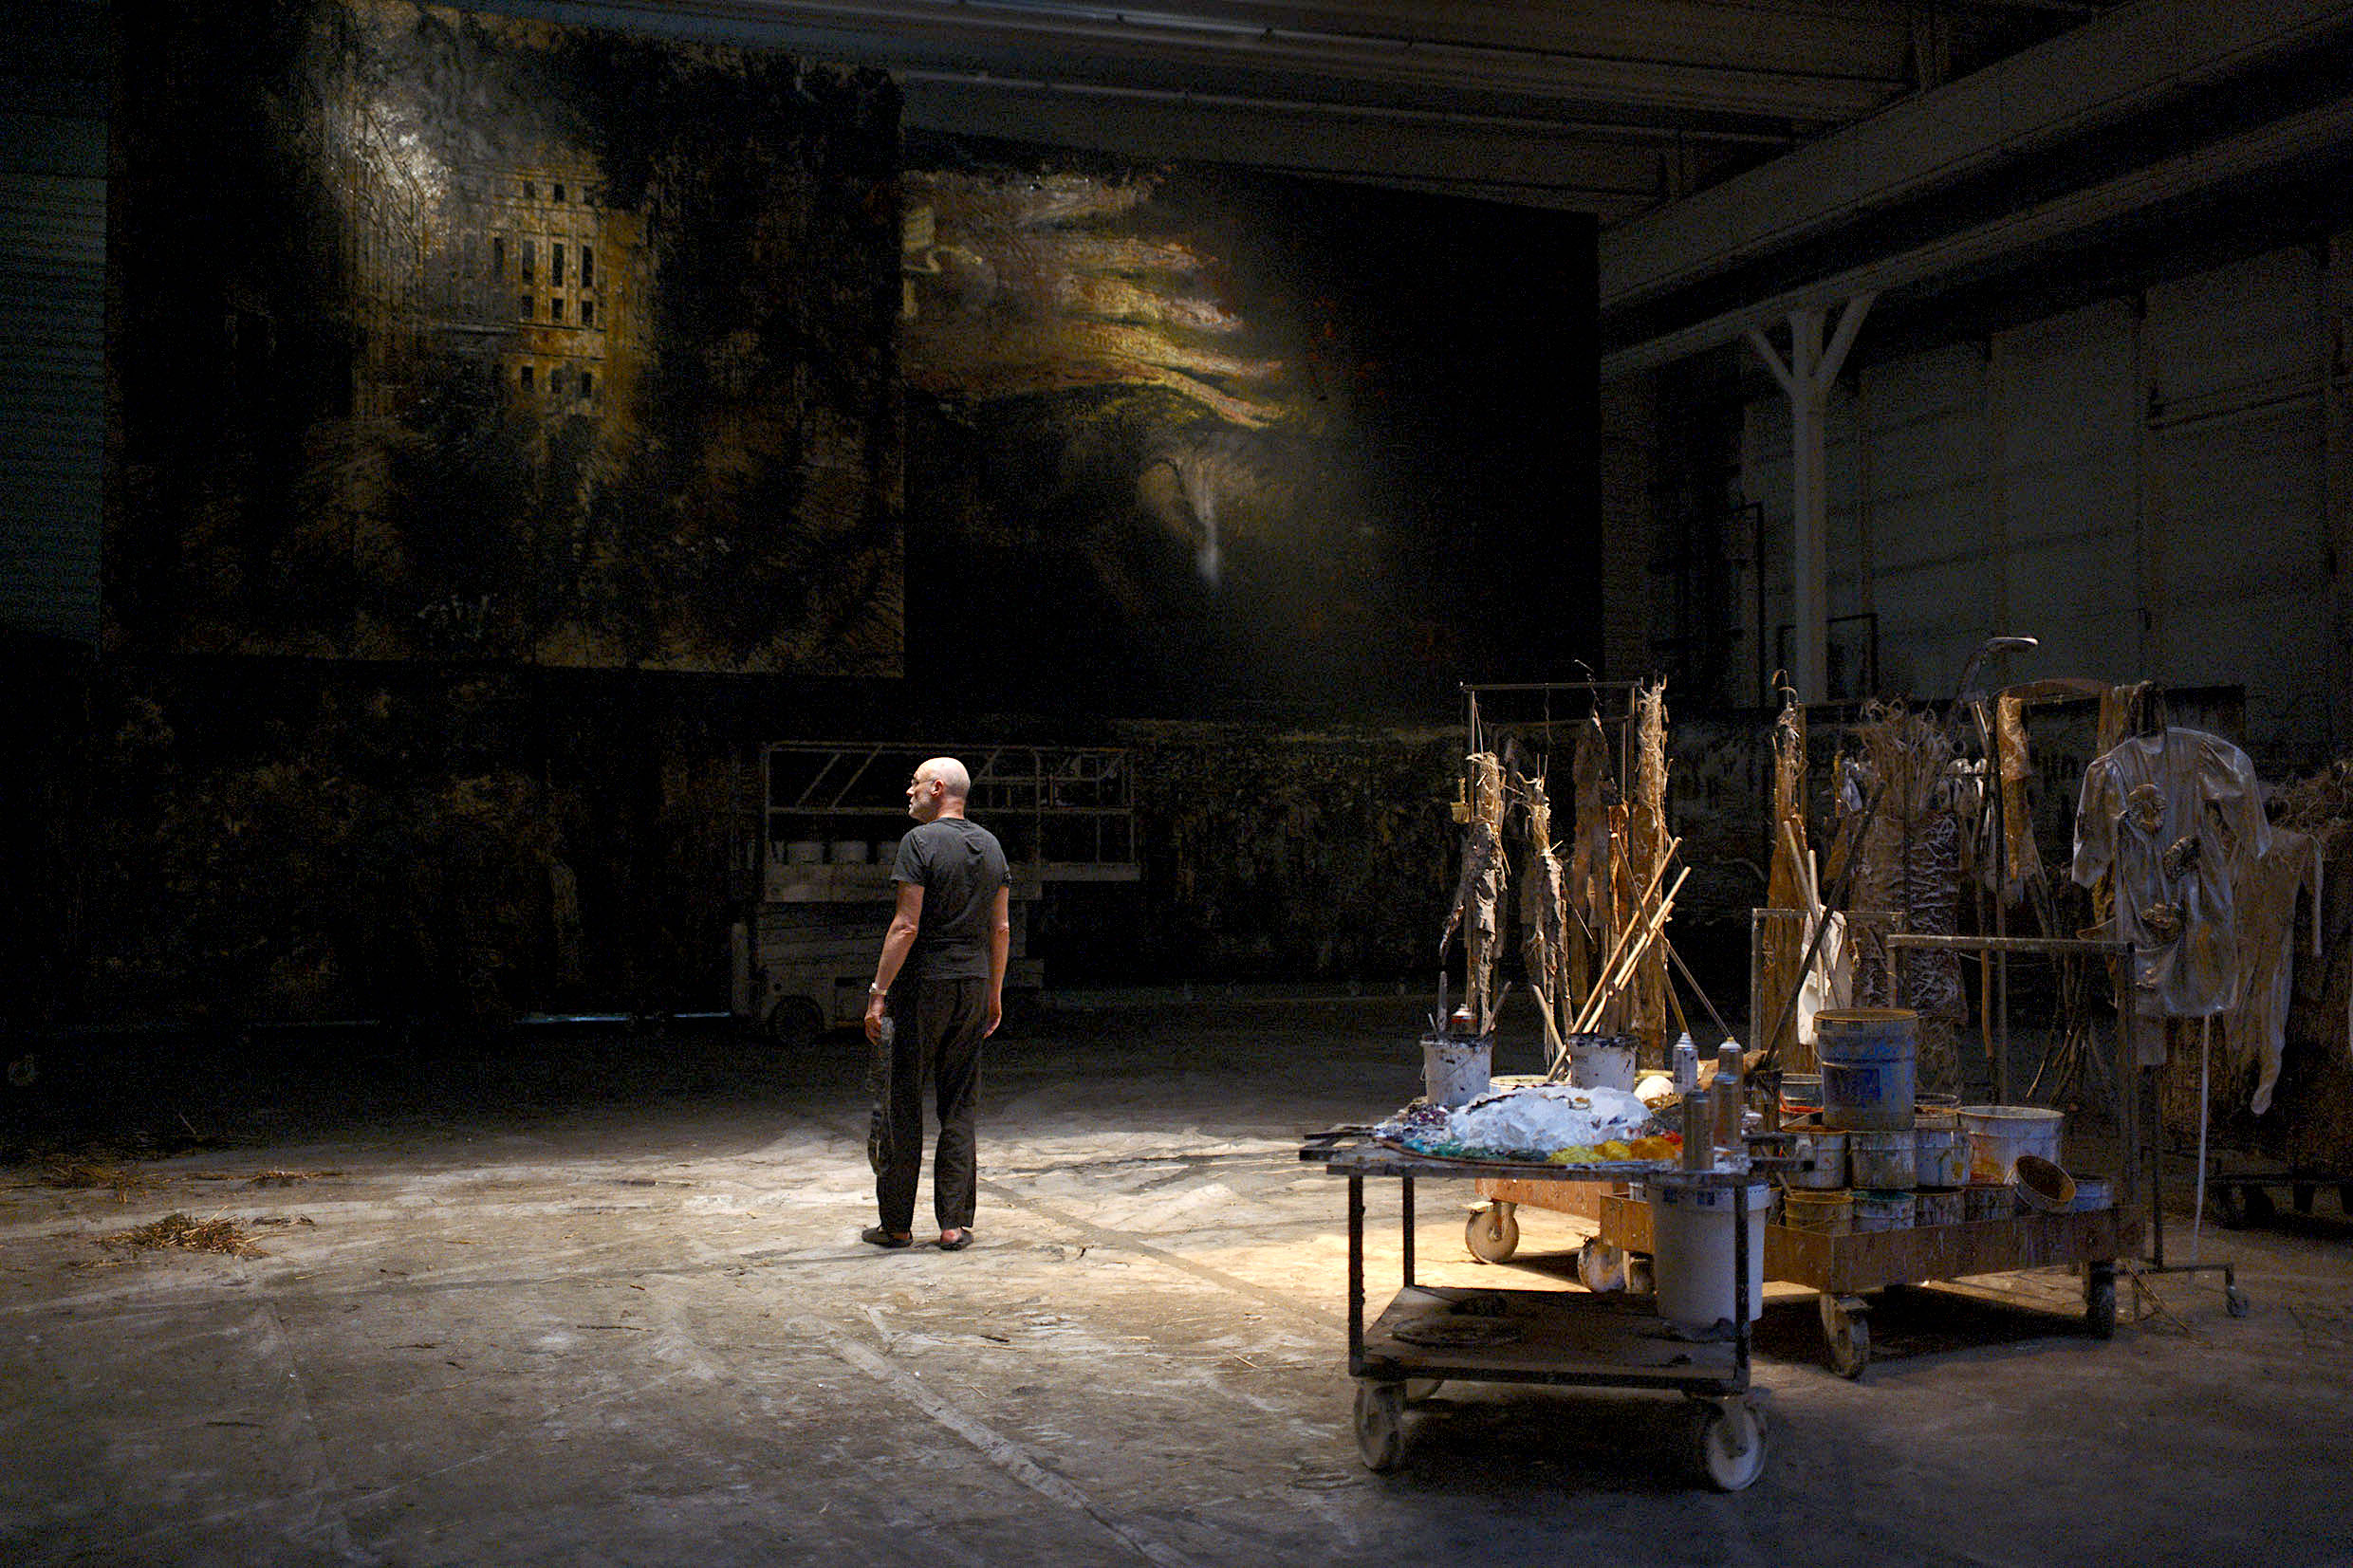 Kiefer in his studio in Anselm